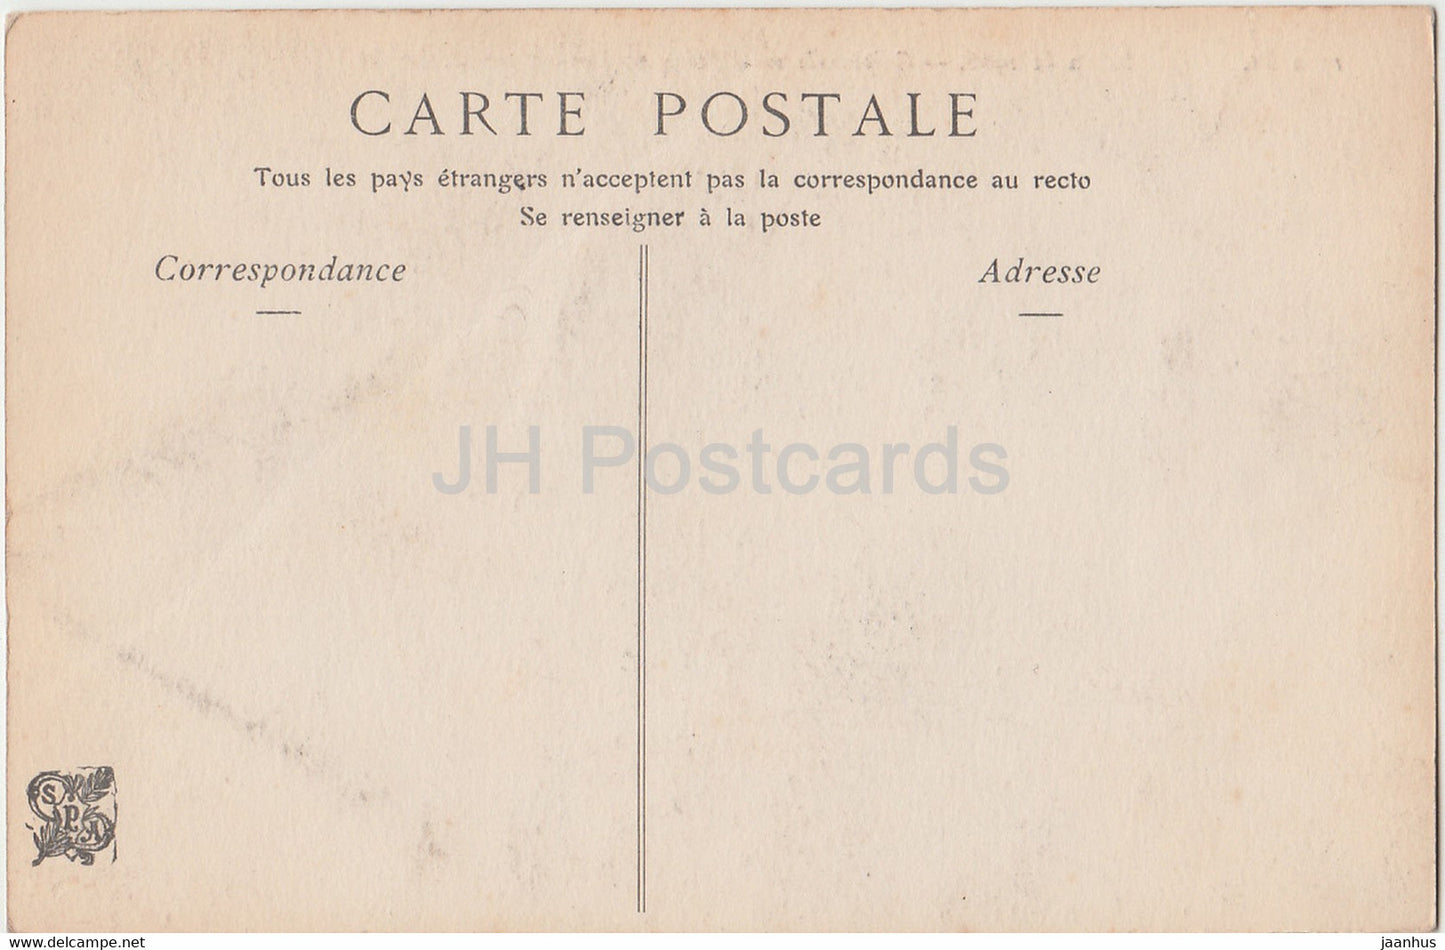 painting by A. Rigolot - Crepuscule sur l'Etang de Cernay - Salon de 1906 - French art - old postcard - France - unused